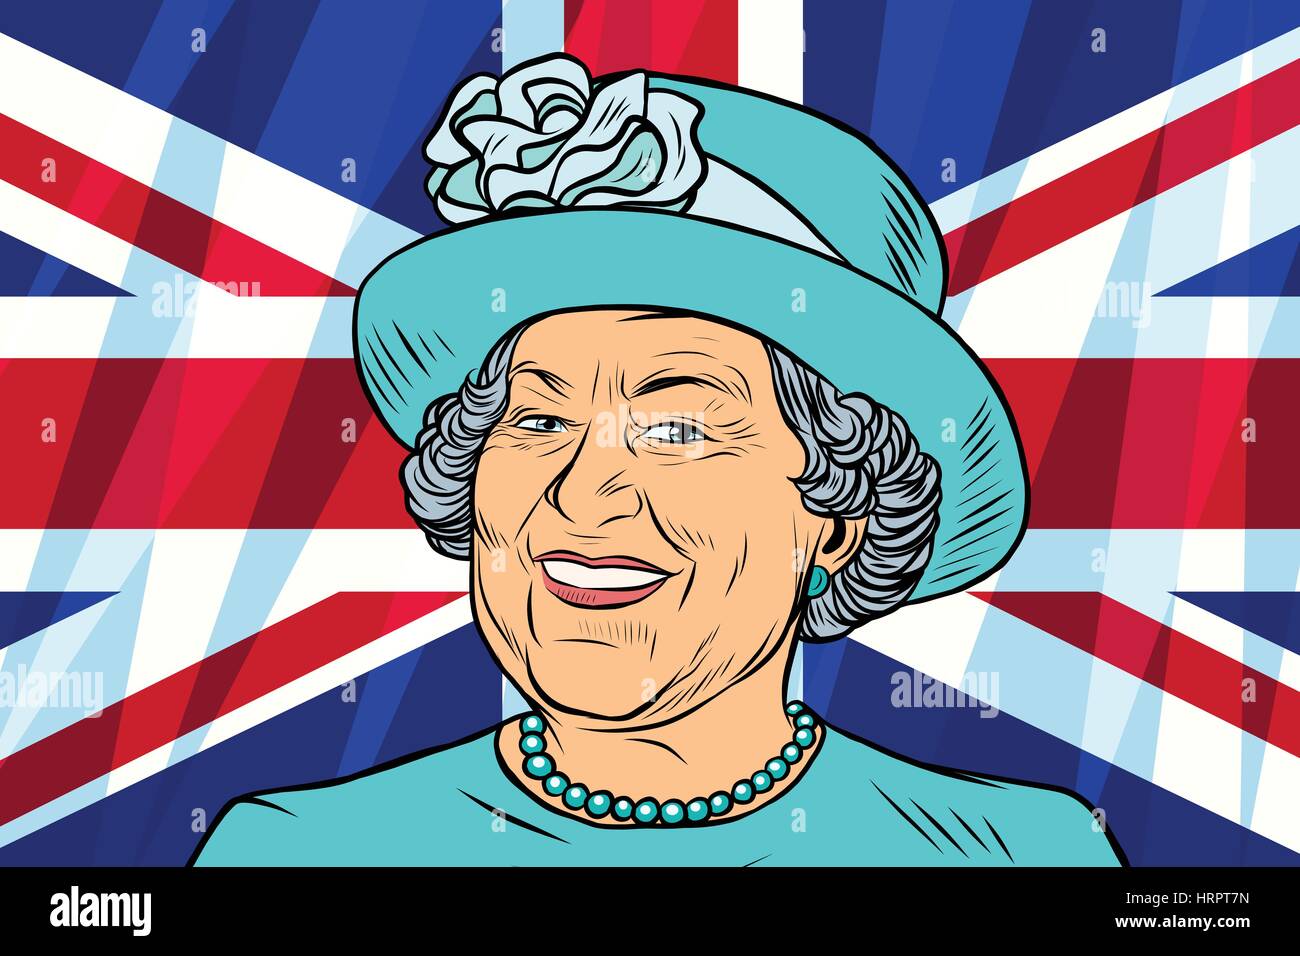 Elisabeth II. Königin von Großbritannien, Kanada, Australien und Neuseeland. Britische Flagge. Vintage Comics Cartoons Abbildung Pop-Art Retro-Vektor Stock Vektor